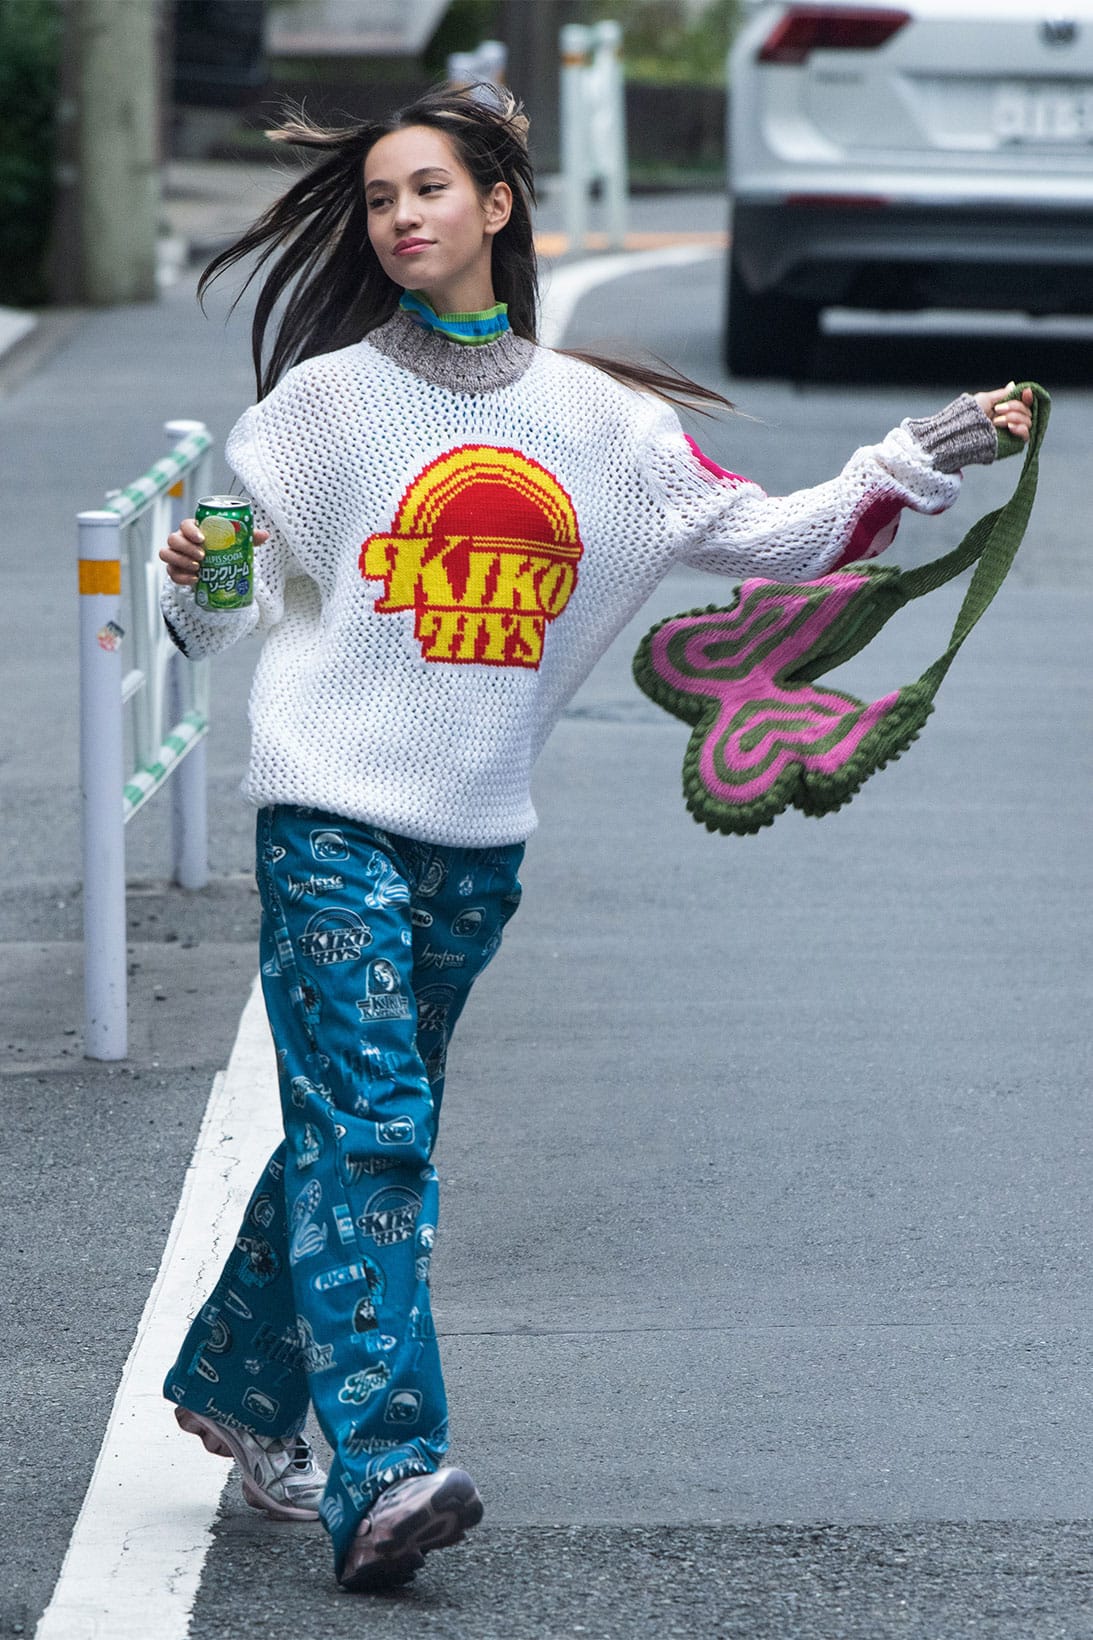 Kiko Mizuhara in Kiko Kostadinov x Hysteric Glamour Campaign